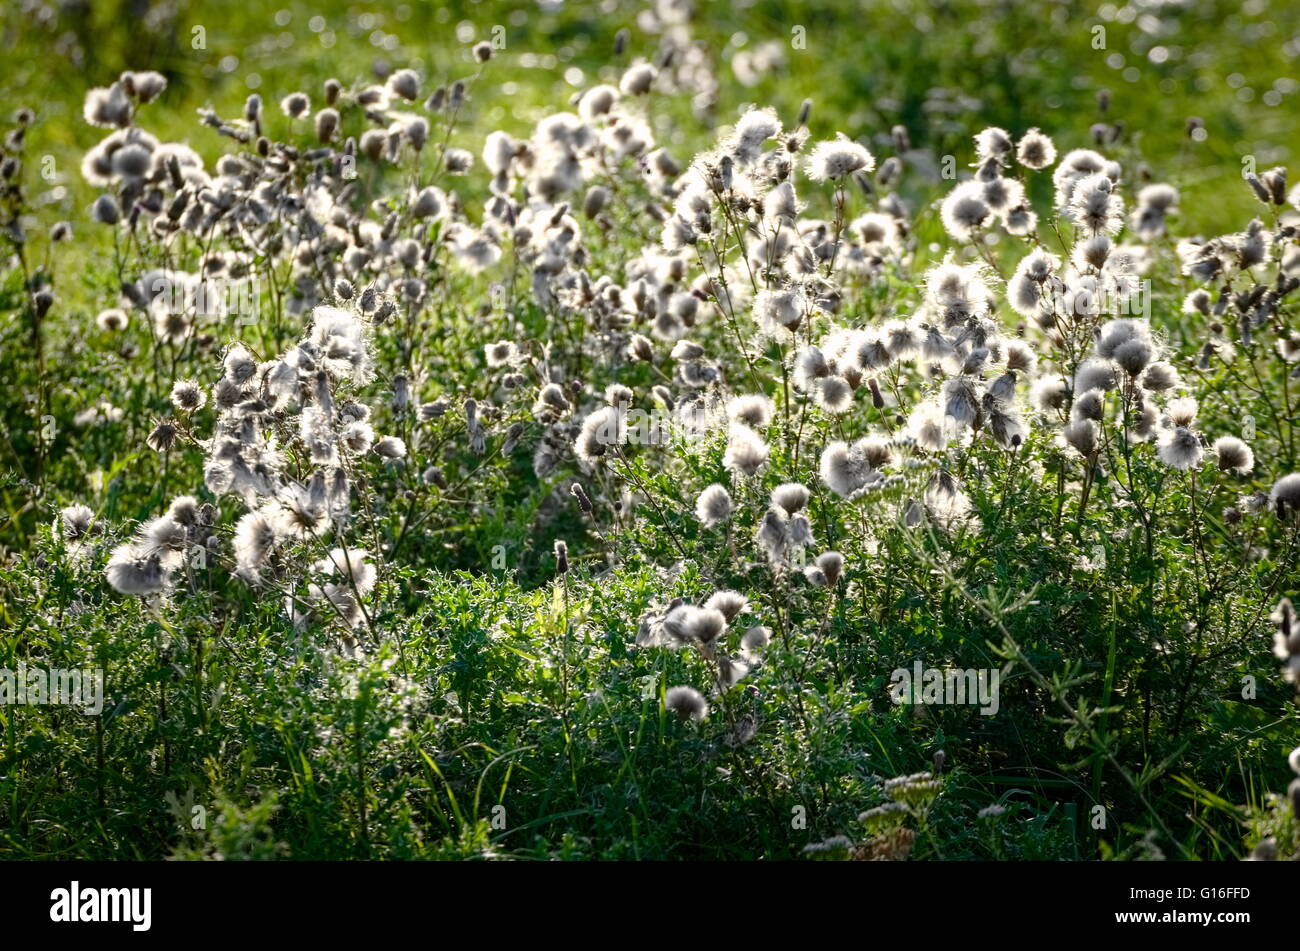 Weiße flauschige Herbst Wild Wiese Pflanzen Hintergrundbeleuchtung  Stockfotografie - Alamy